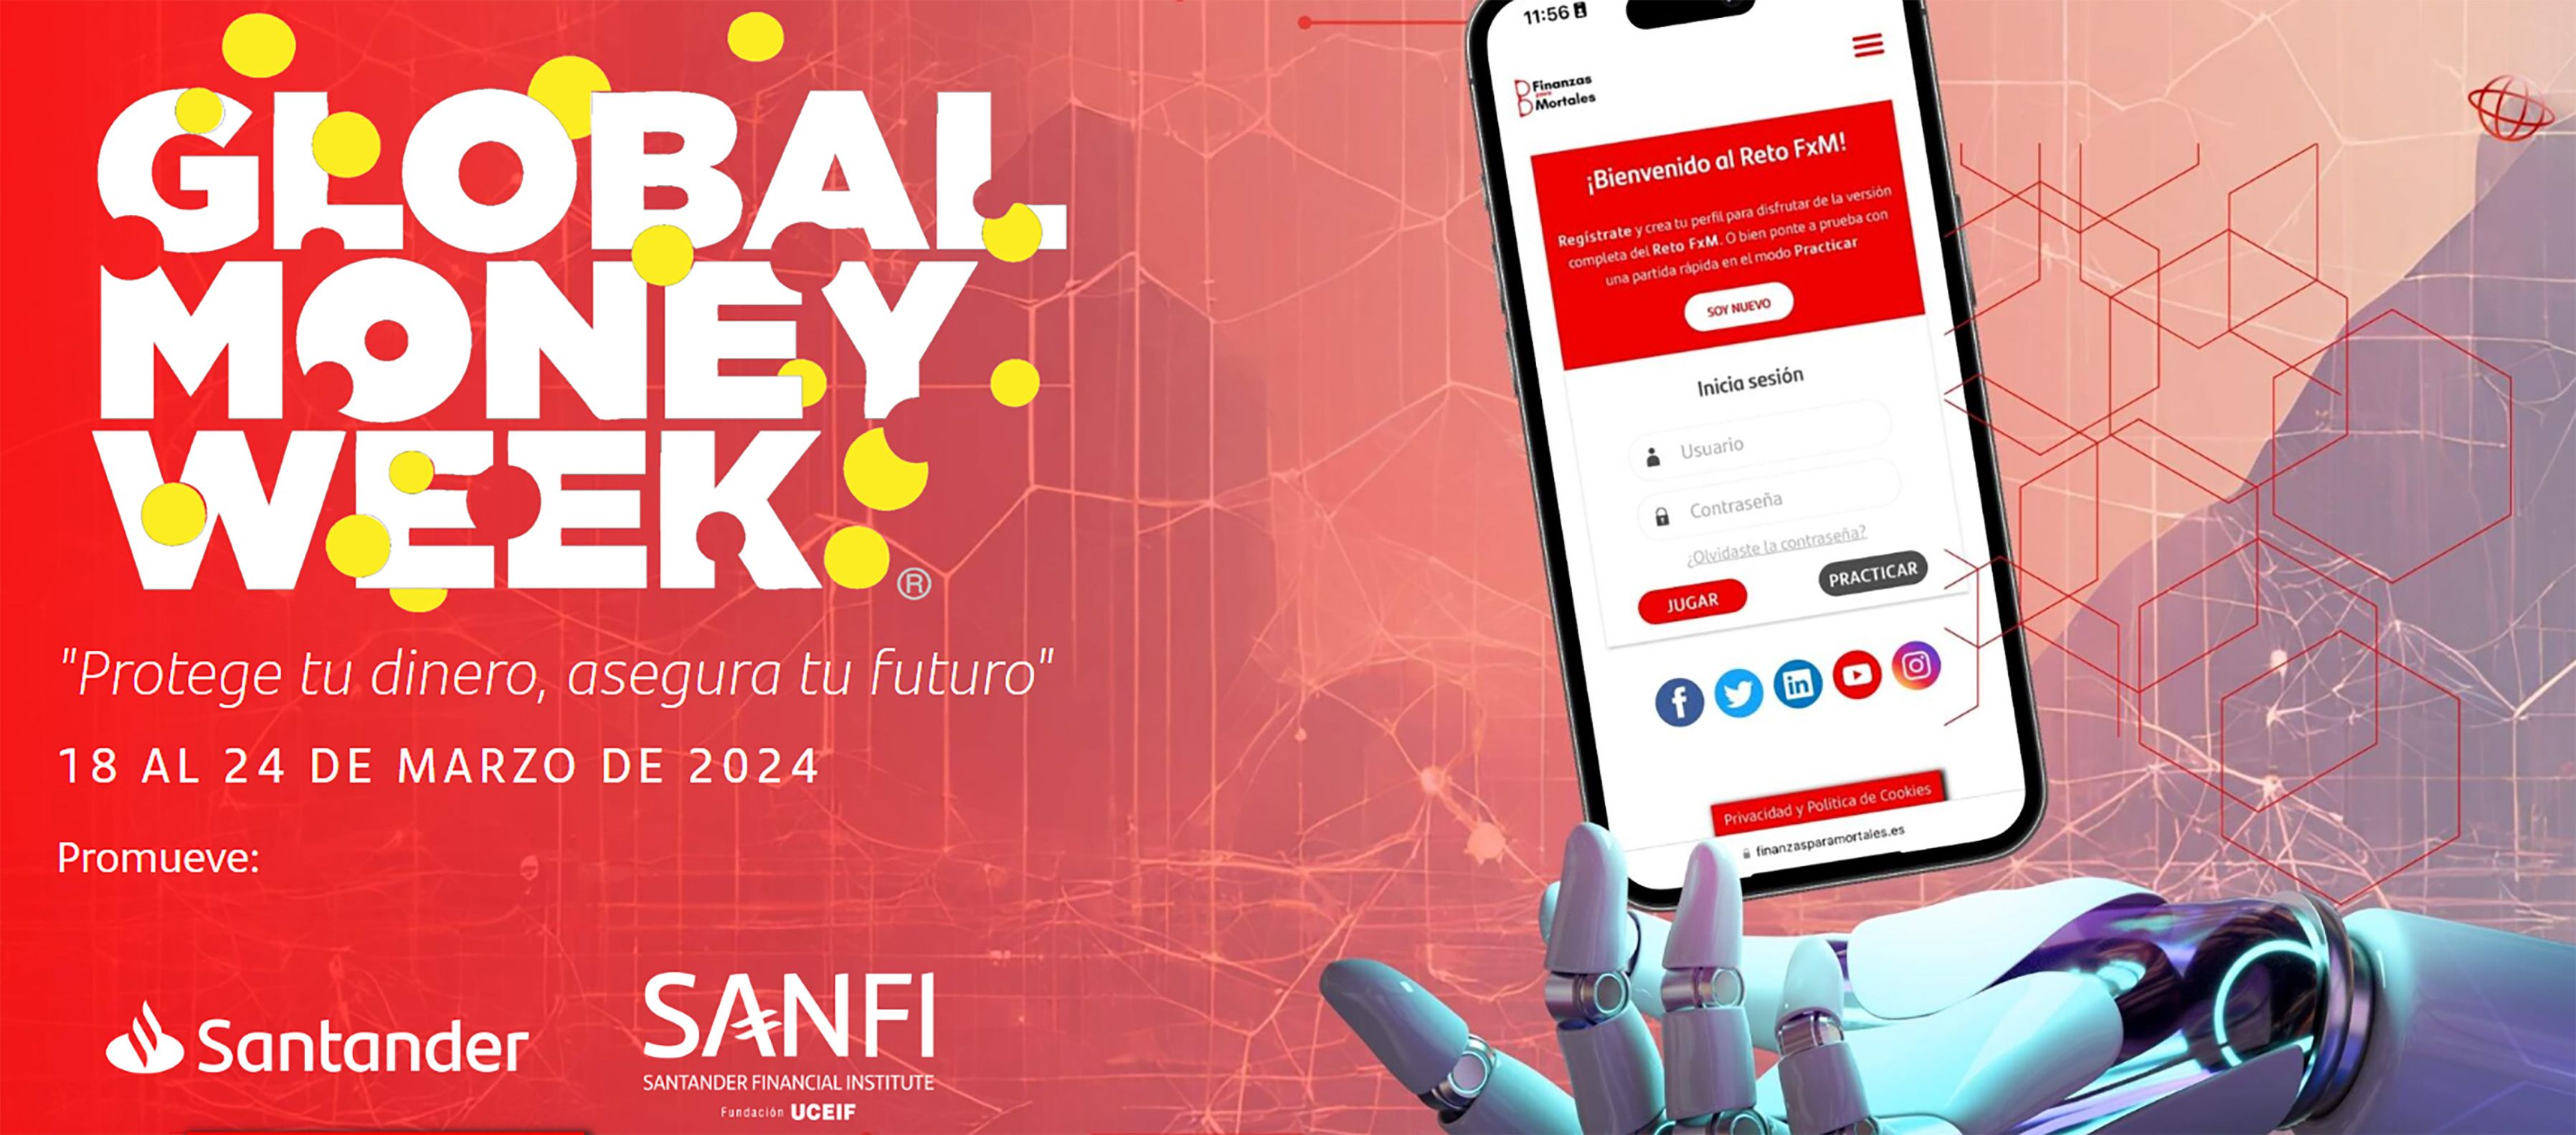 Banco Santander participa en la Global Money Week con más de 100 contenidos sobre ciberseguridad